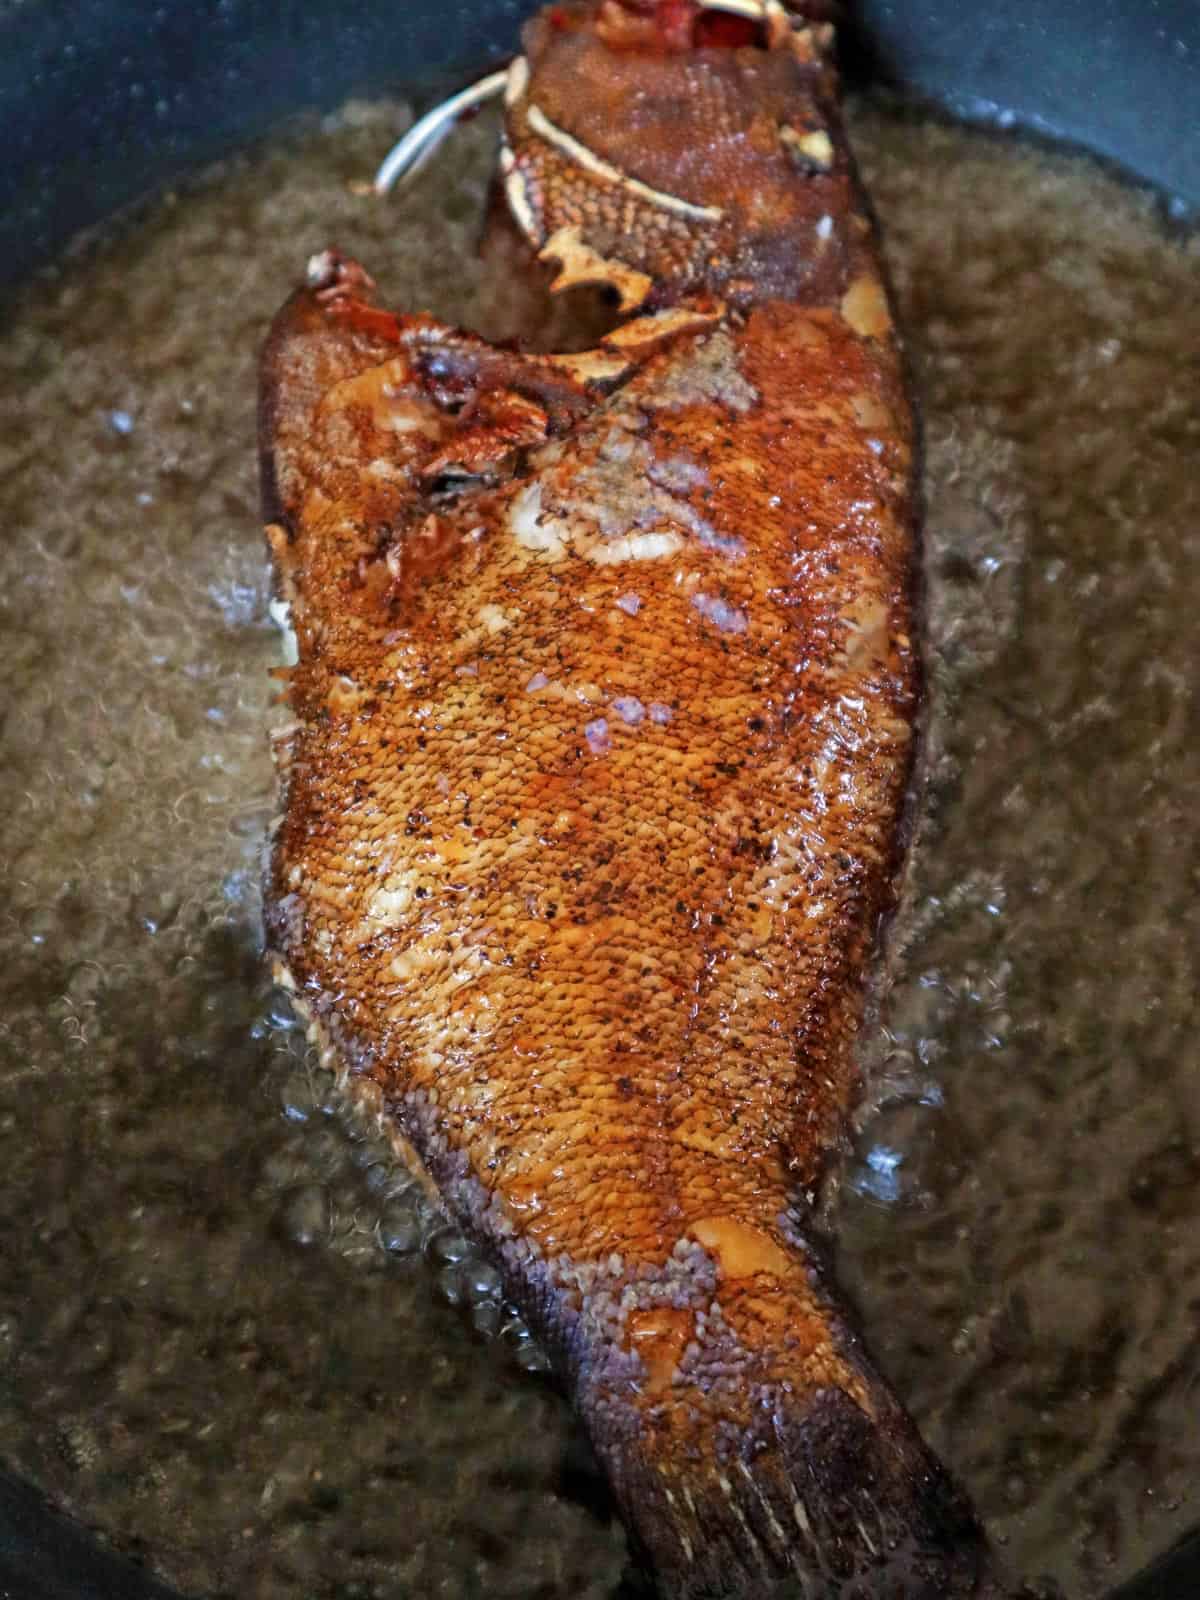 lapu-lapu frying in hot oil in a pan